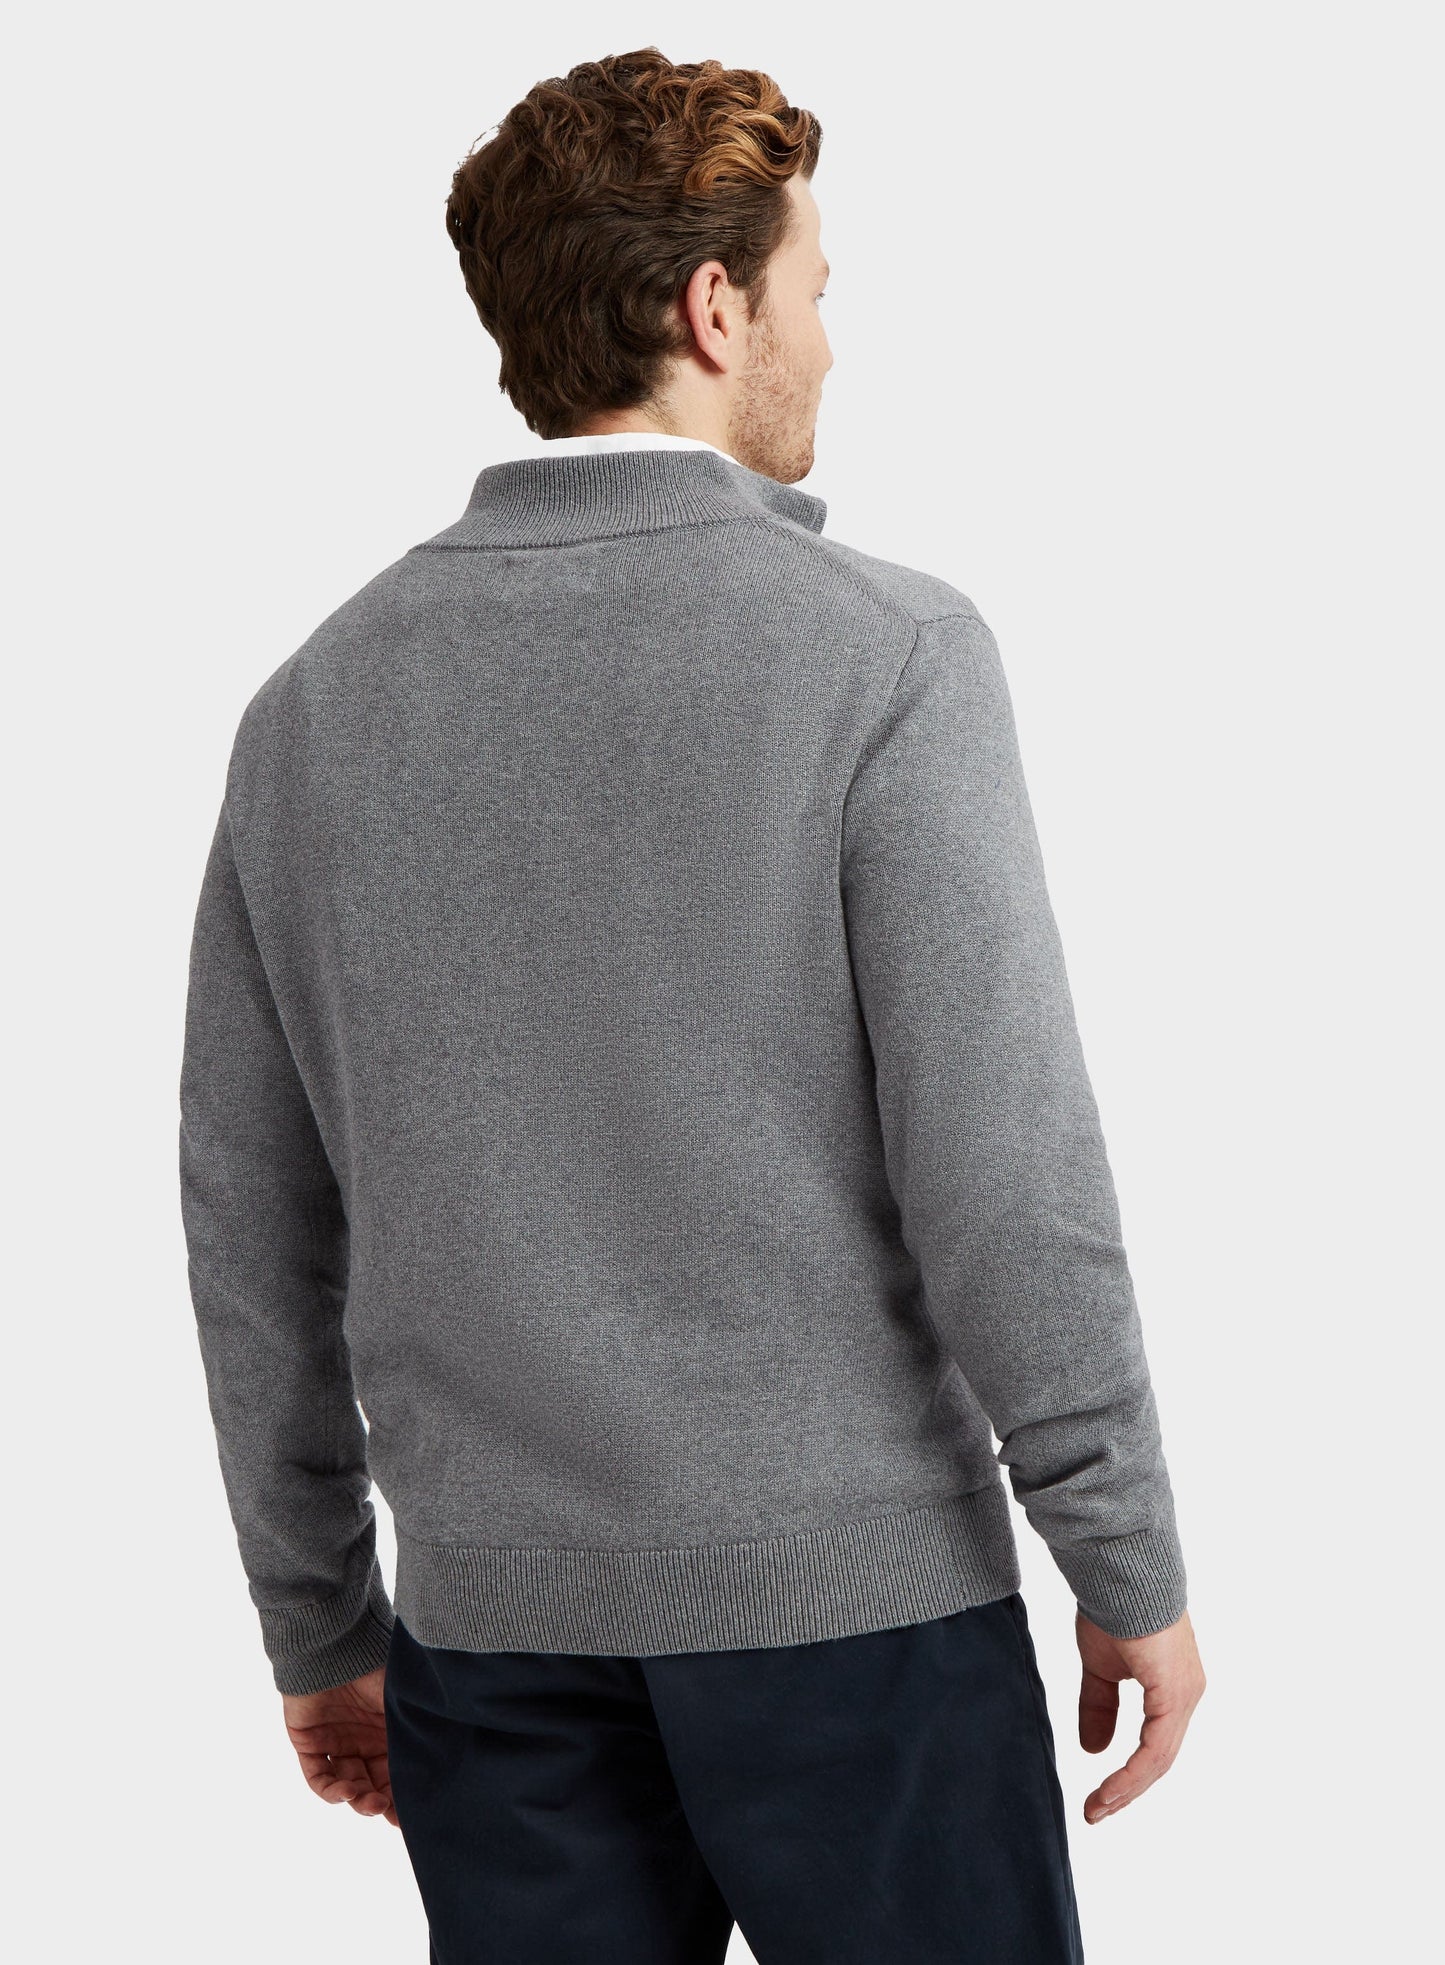 Cotton Cashmere 1/4 Zip in Grey